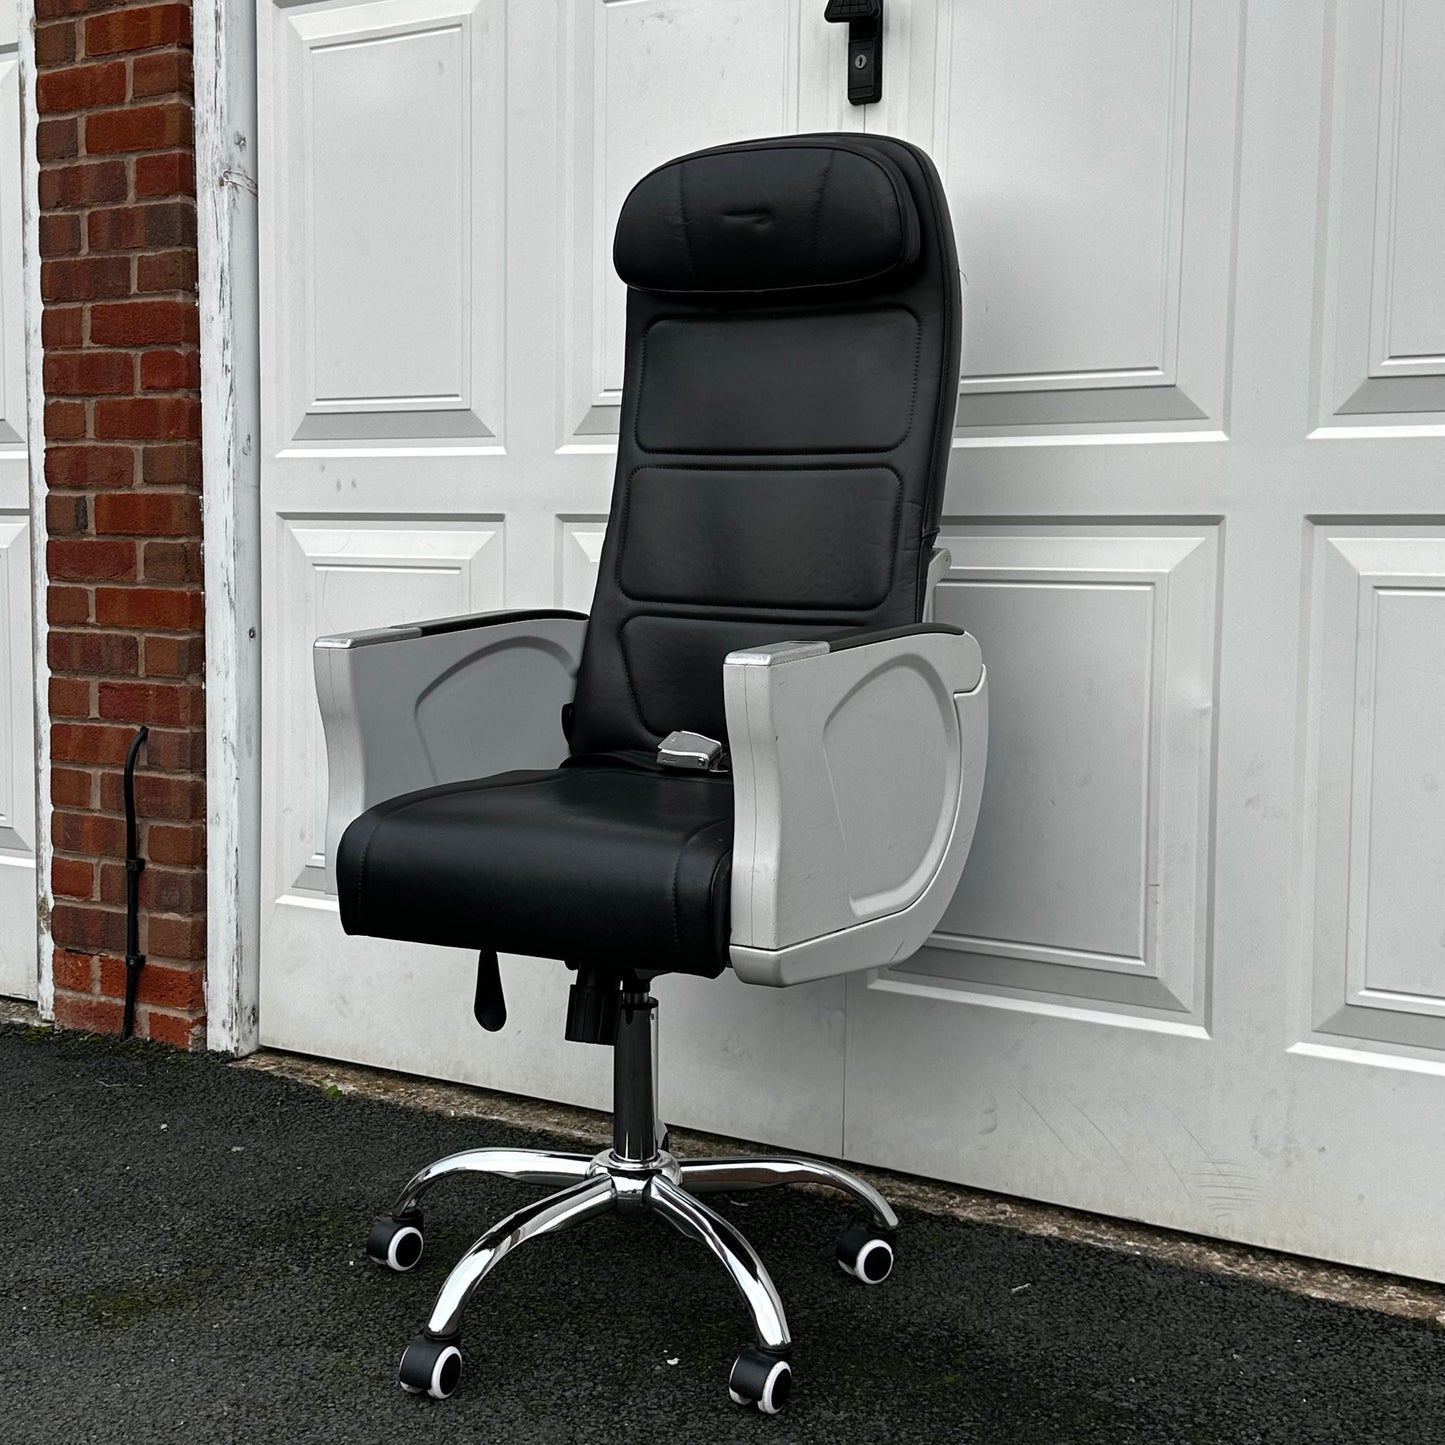 British Airways Premium Economy Club Europe Upcycled Office Desk Chair Speedbird concorde